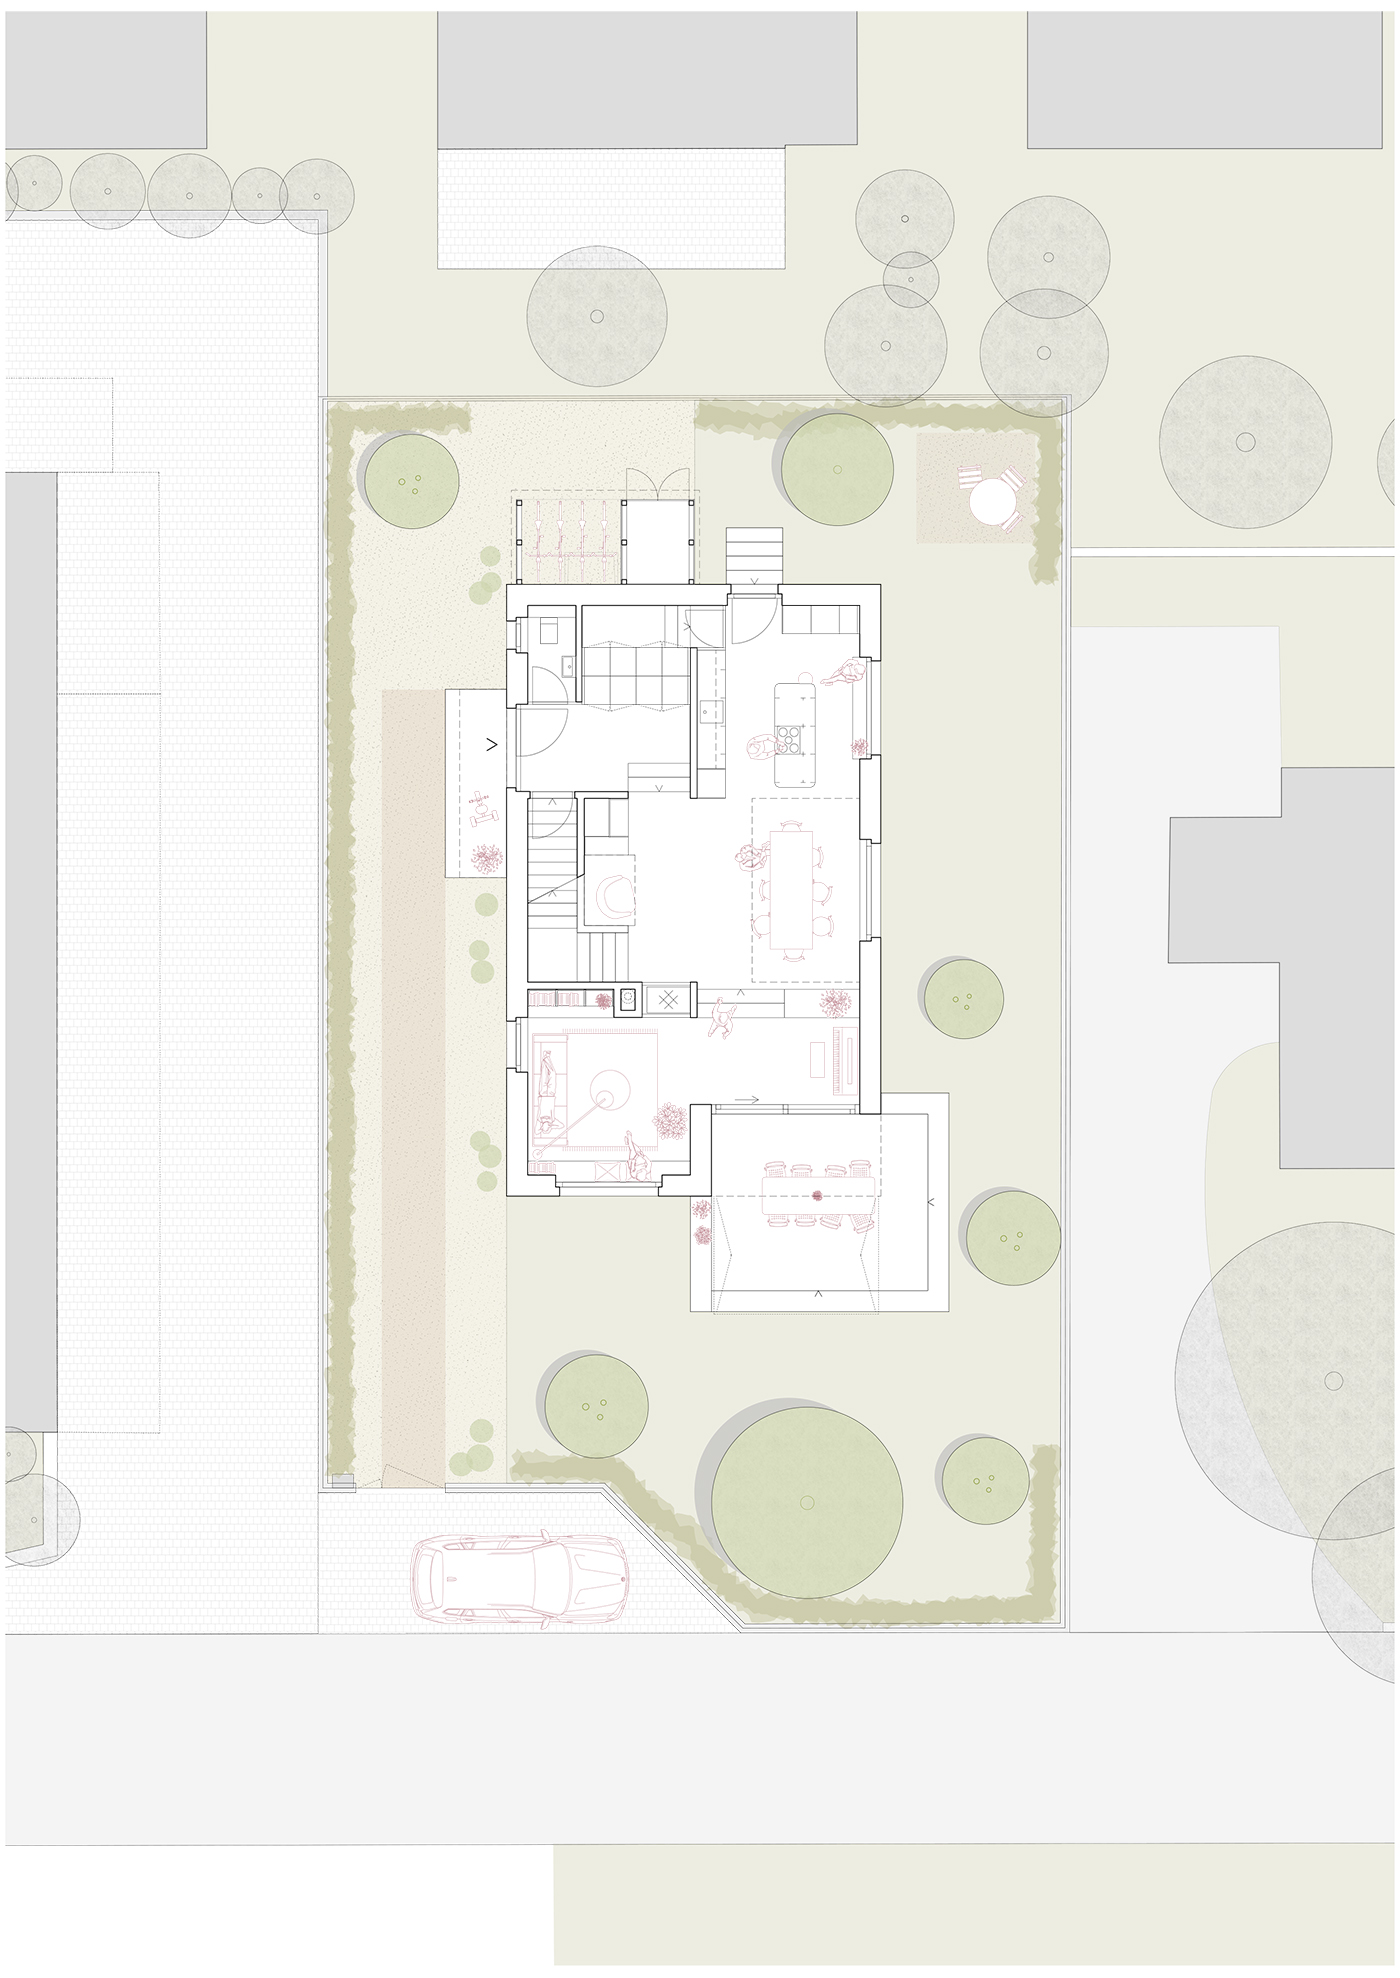 buan architekten – Ersatzneubau Einfamilienhaus Kriens – Erdgeschoss mit Umgebung